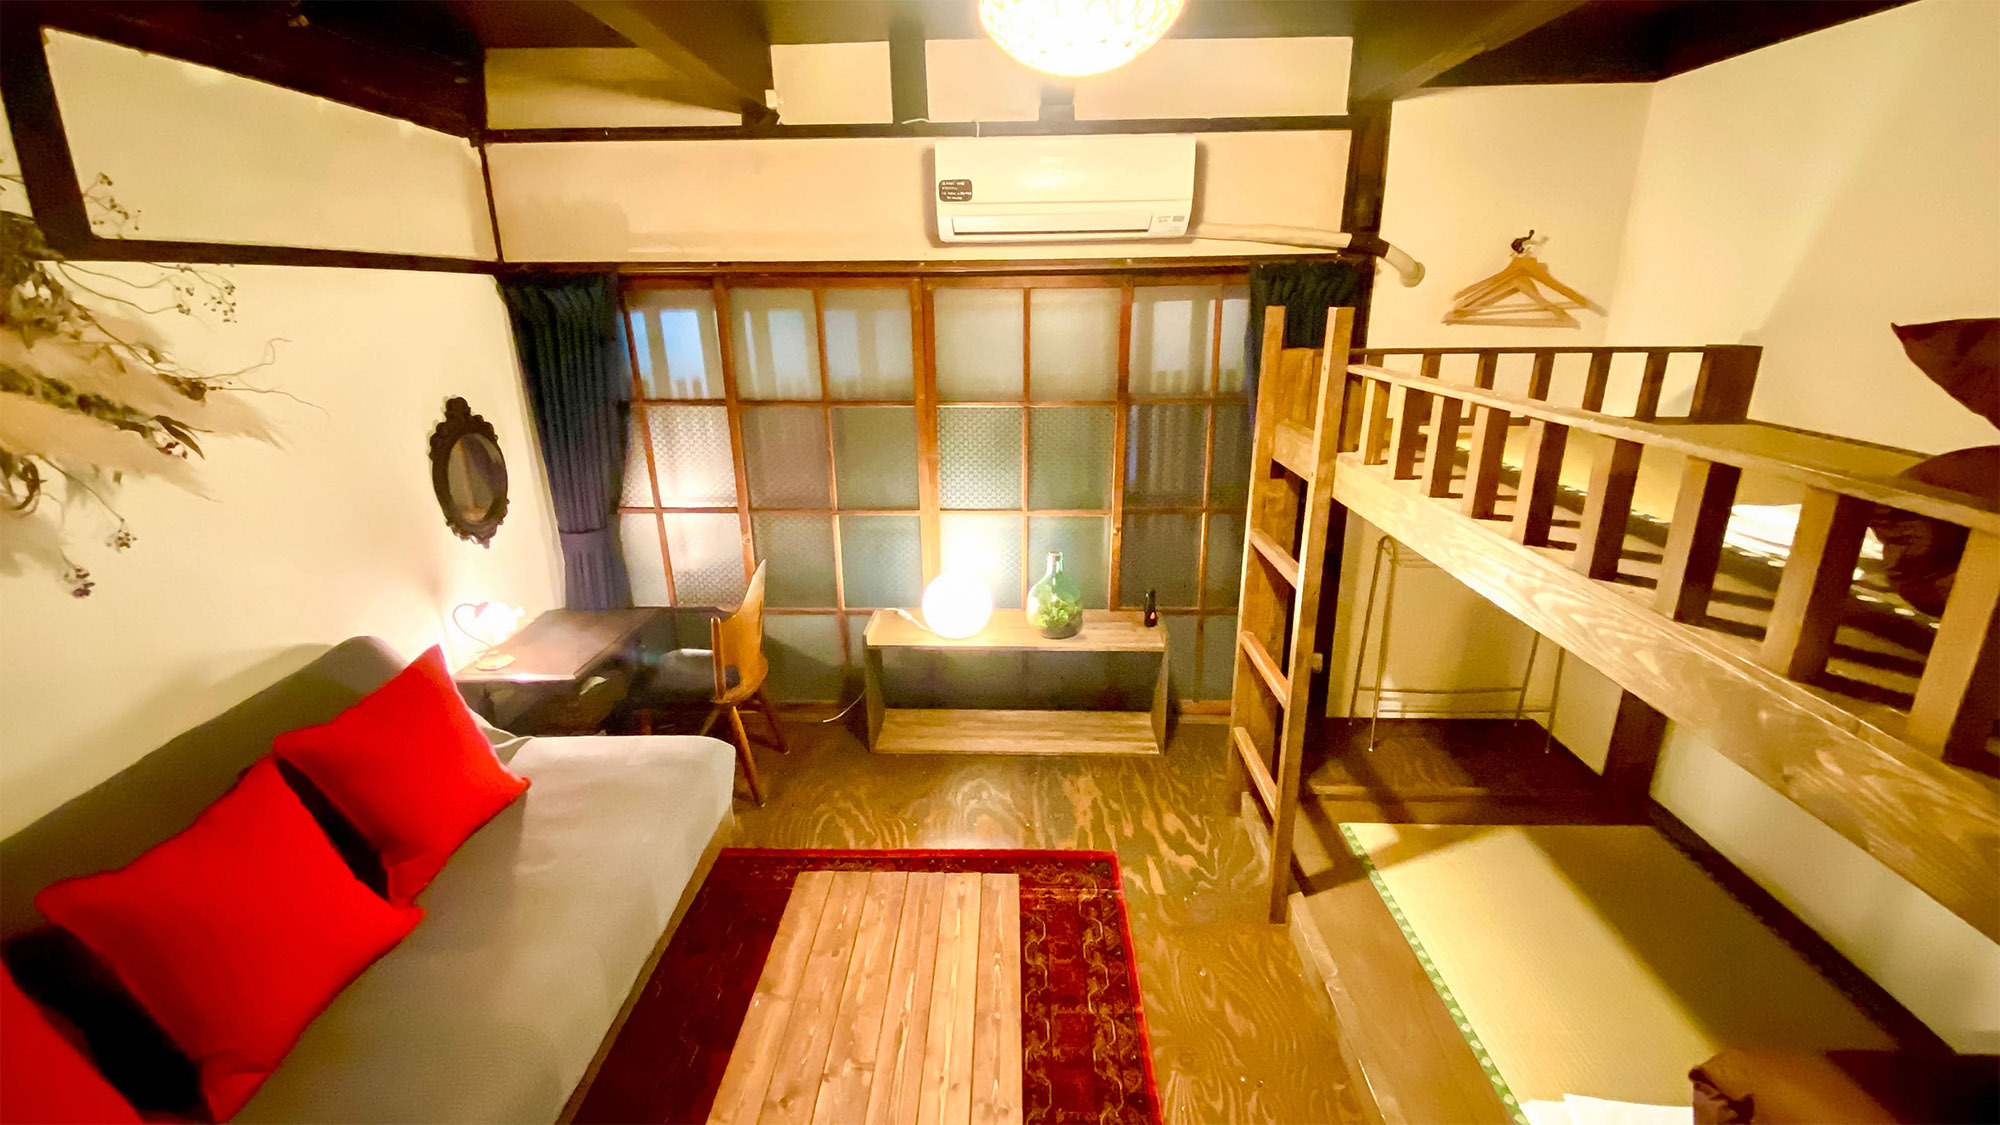 【素泊／スタンダードプラン】レトロな京町家で過ごす特別な京都旅を。手作りMAPをもって京都の町を散策